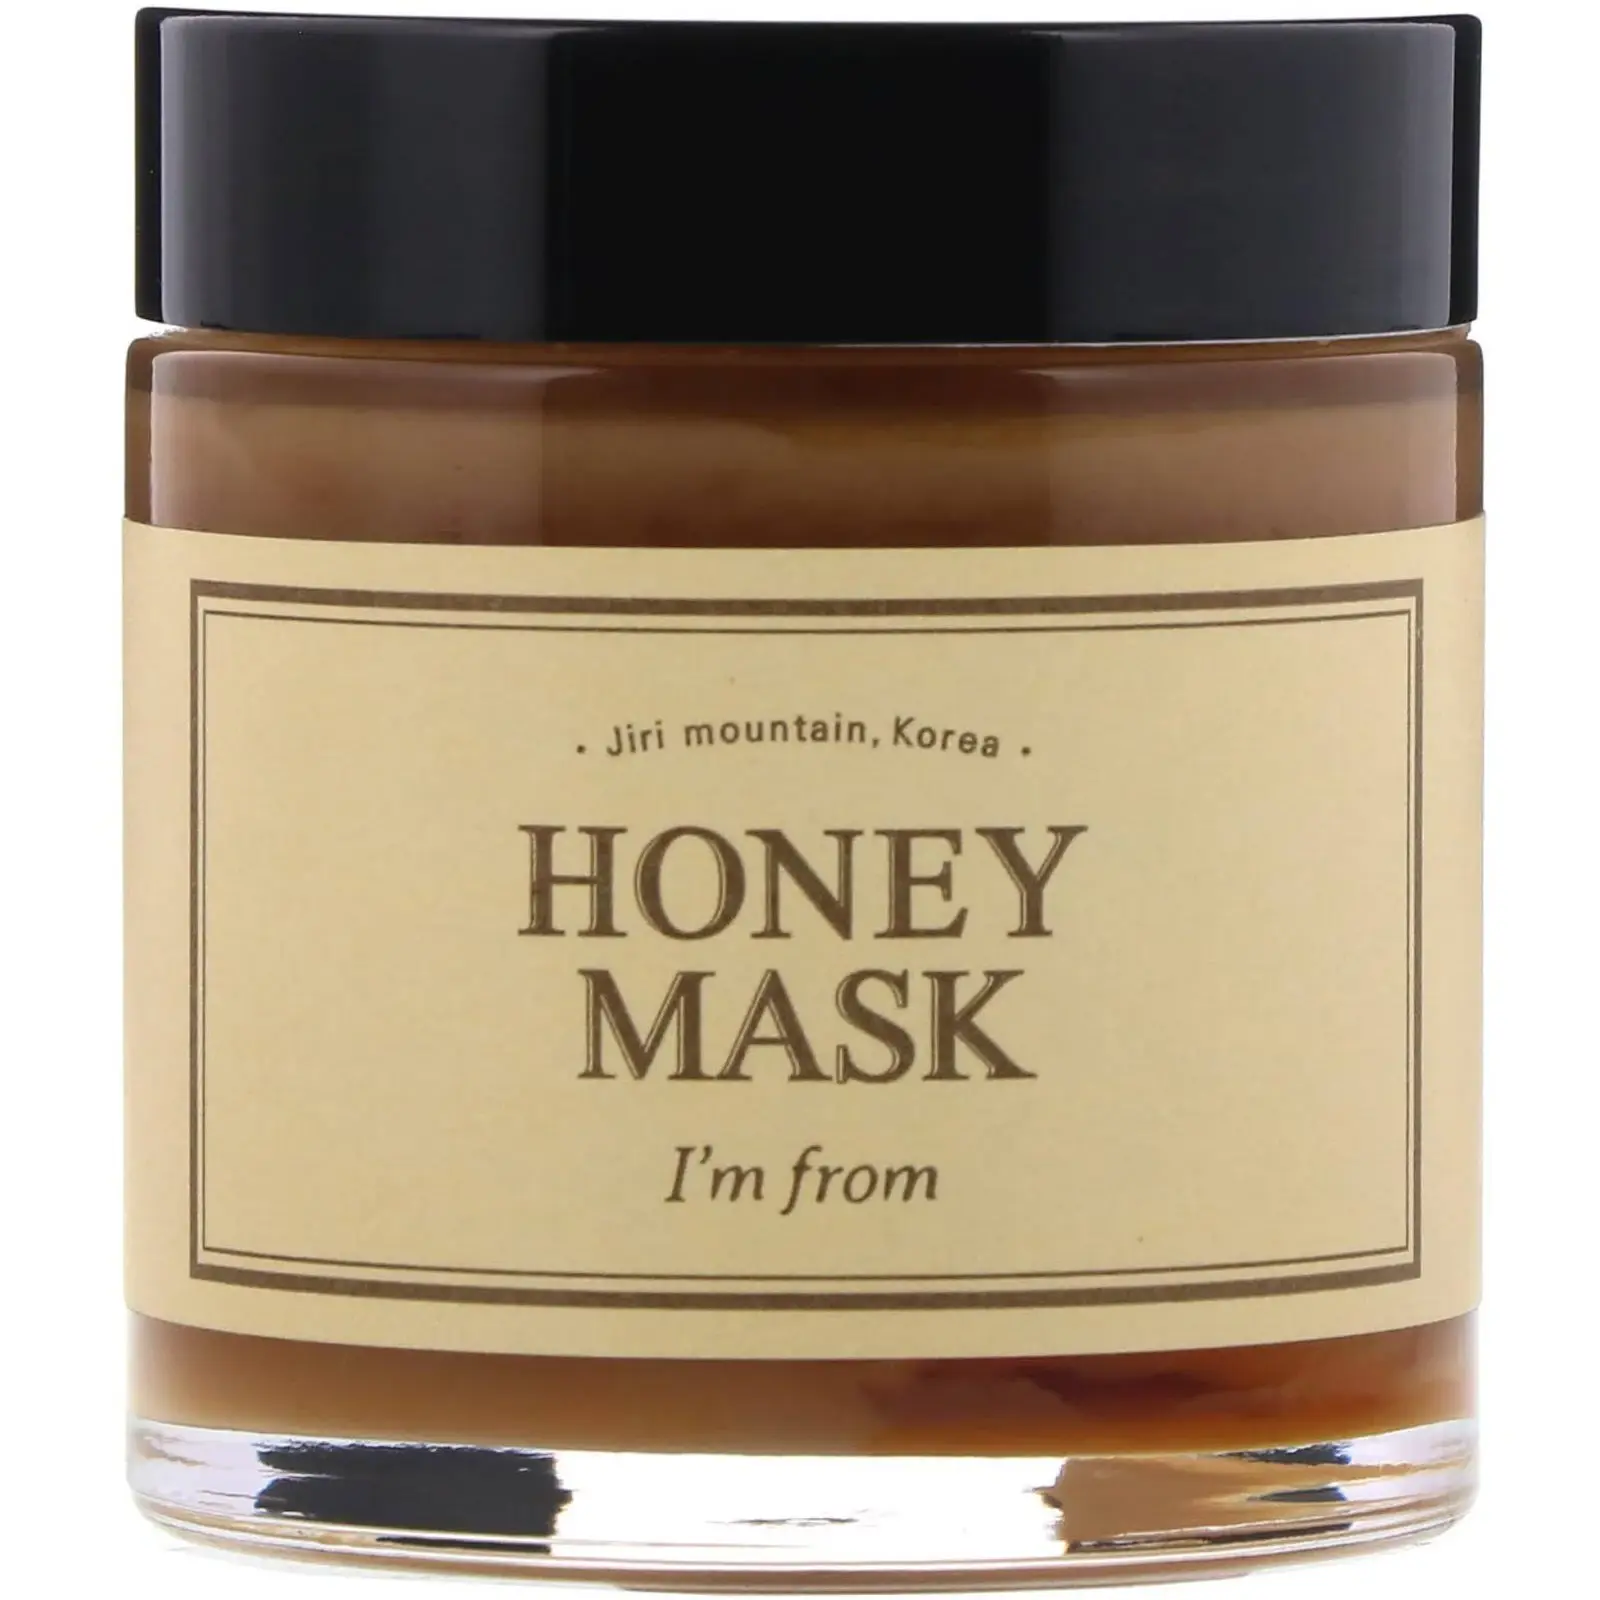 I'm From - Honey Mask - 120g